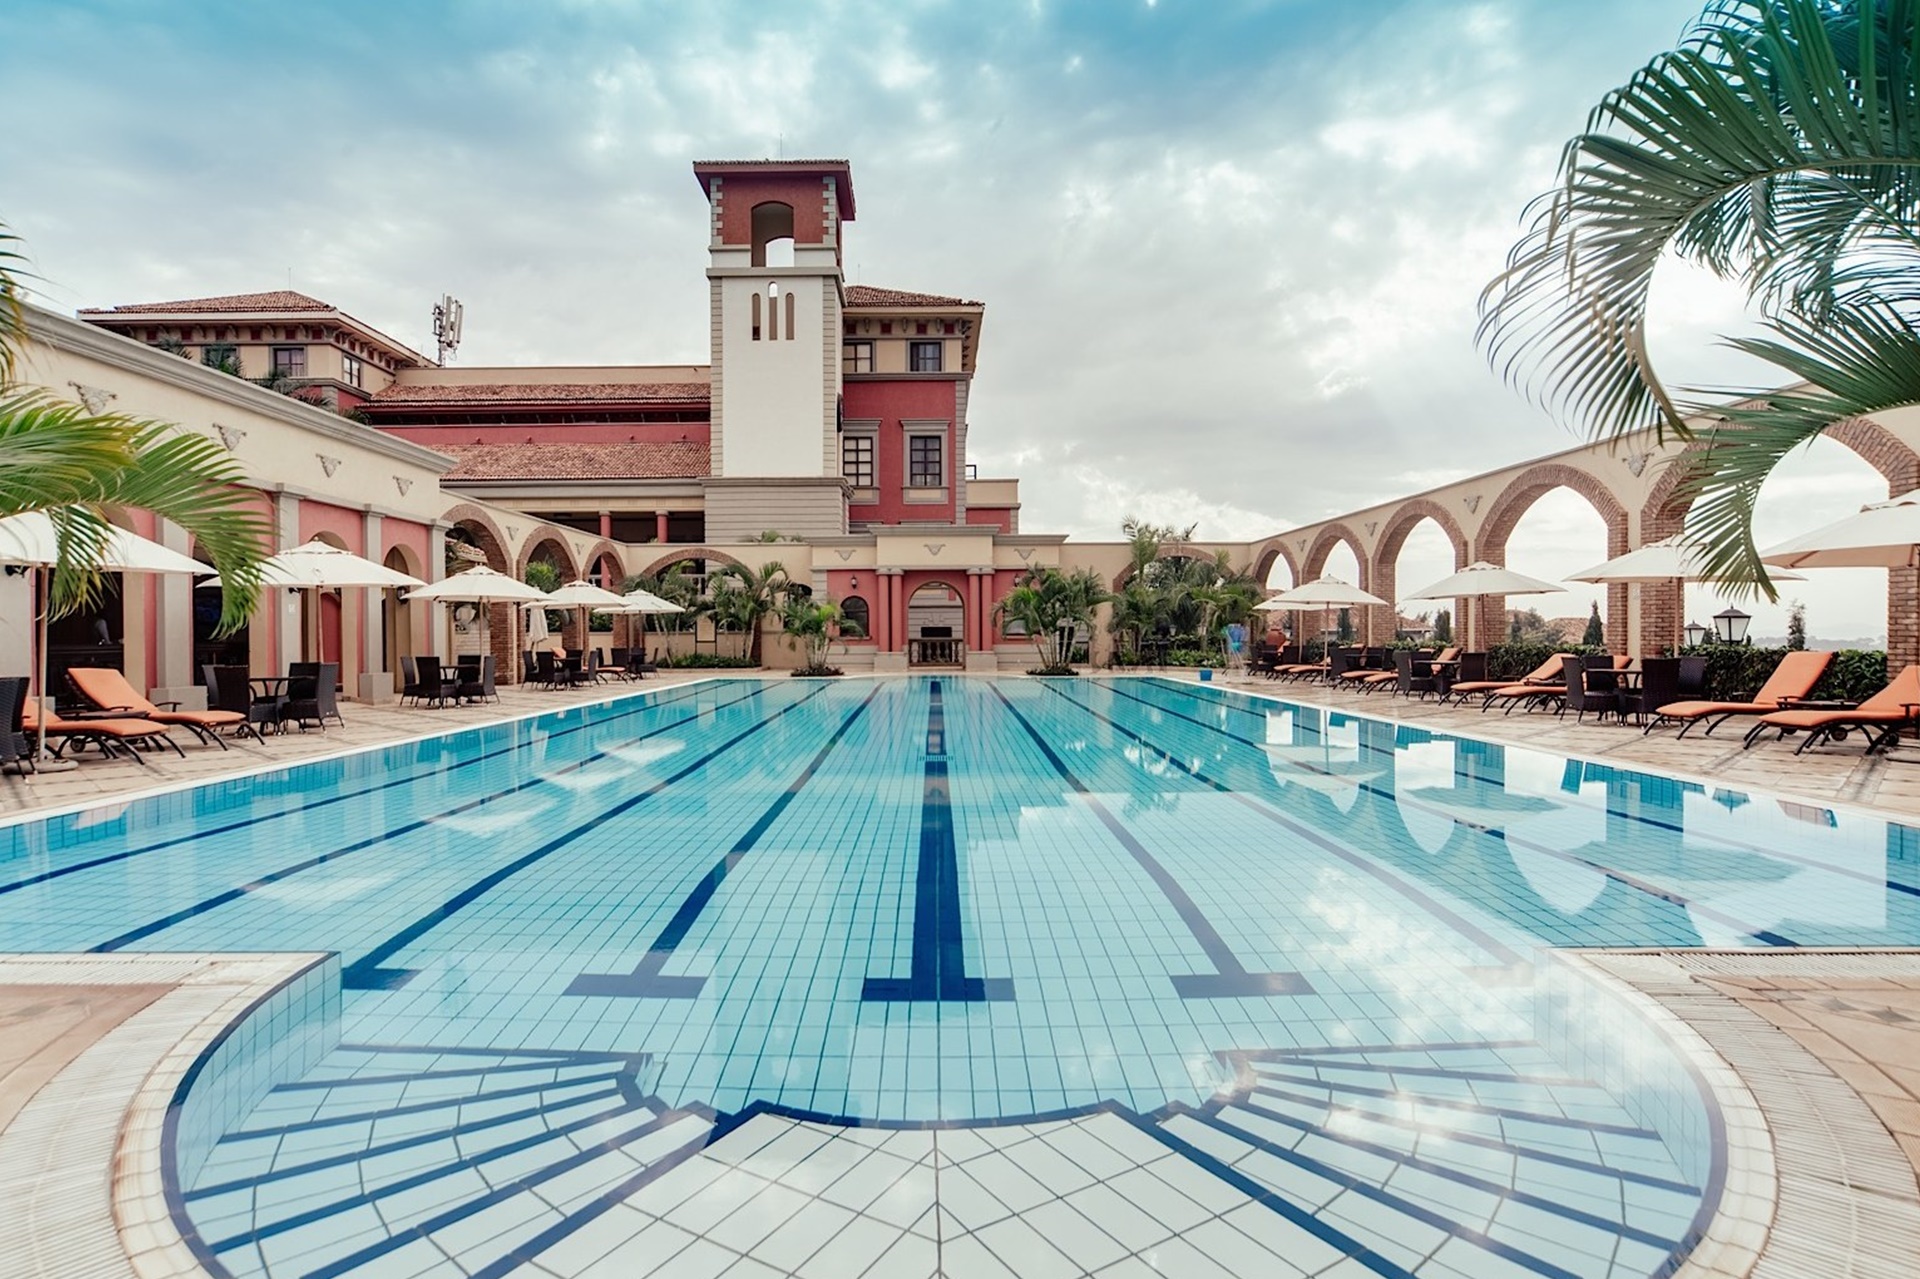 Entebbe hotels - Swimming pool at Lake Victoria Serena Golf Resort and Spa